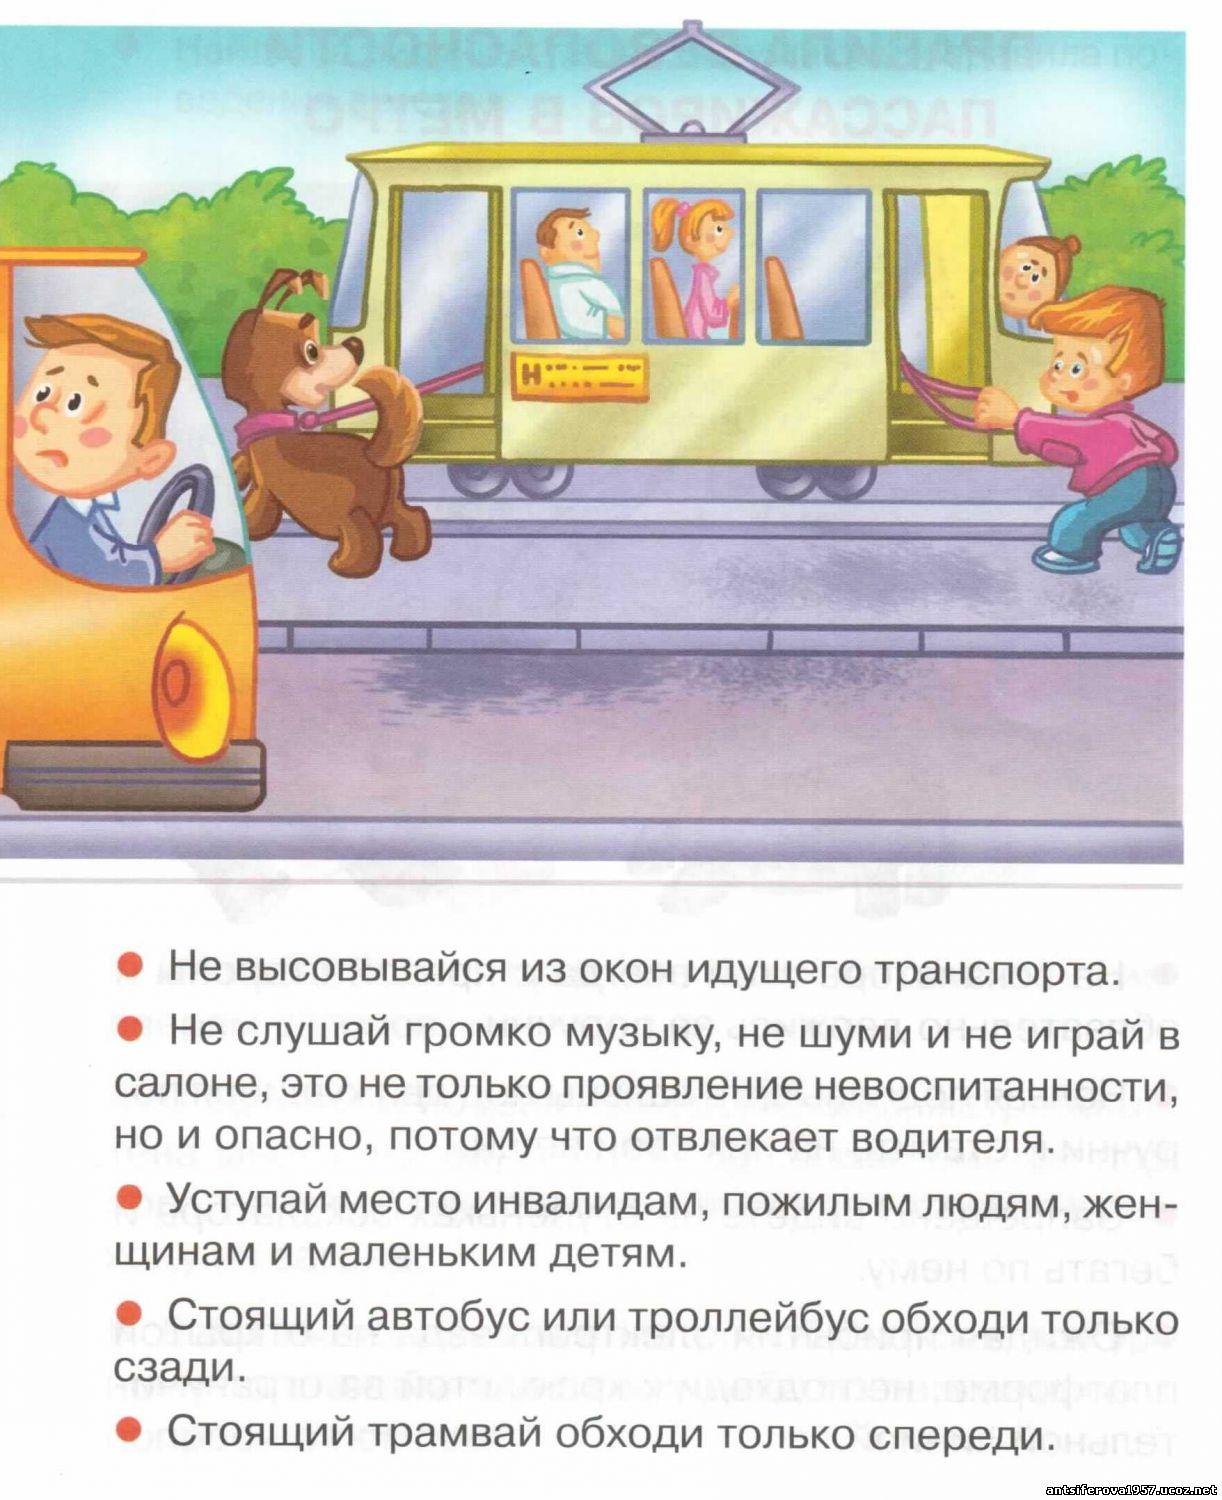 В транспорте нельзя окружающий. Правила поведения в общественном транспорте. Безопасность пассажира в общественном транспорте. Безопасность детей в общественном транспорте. Поведение пассажиров в общественном транспорте.